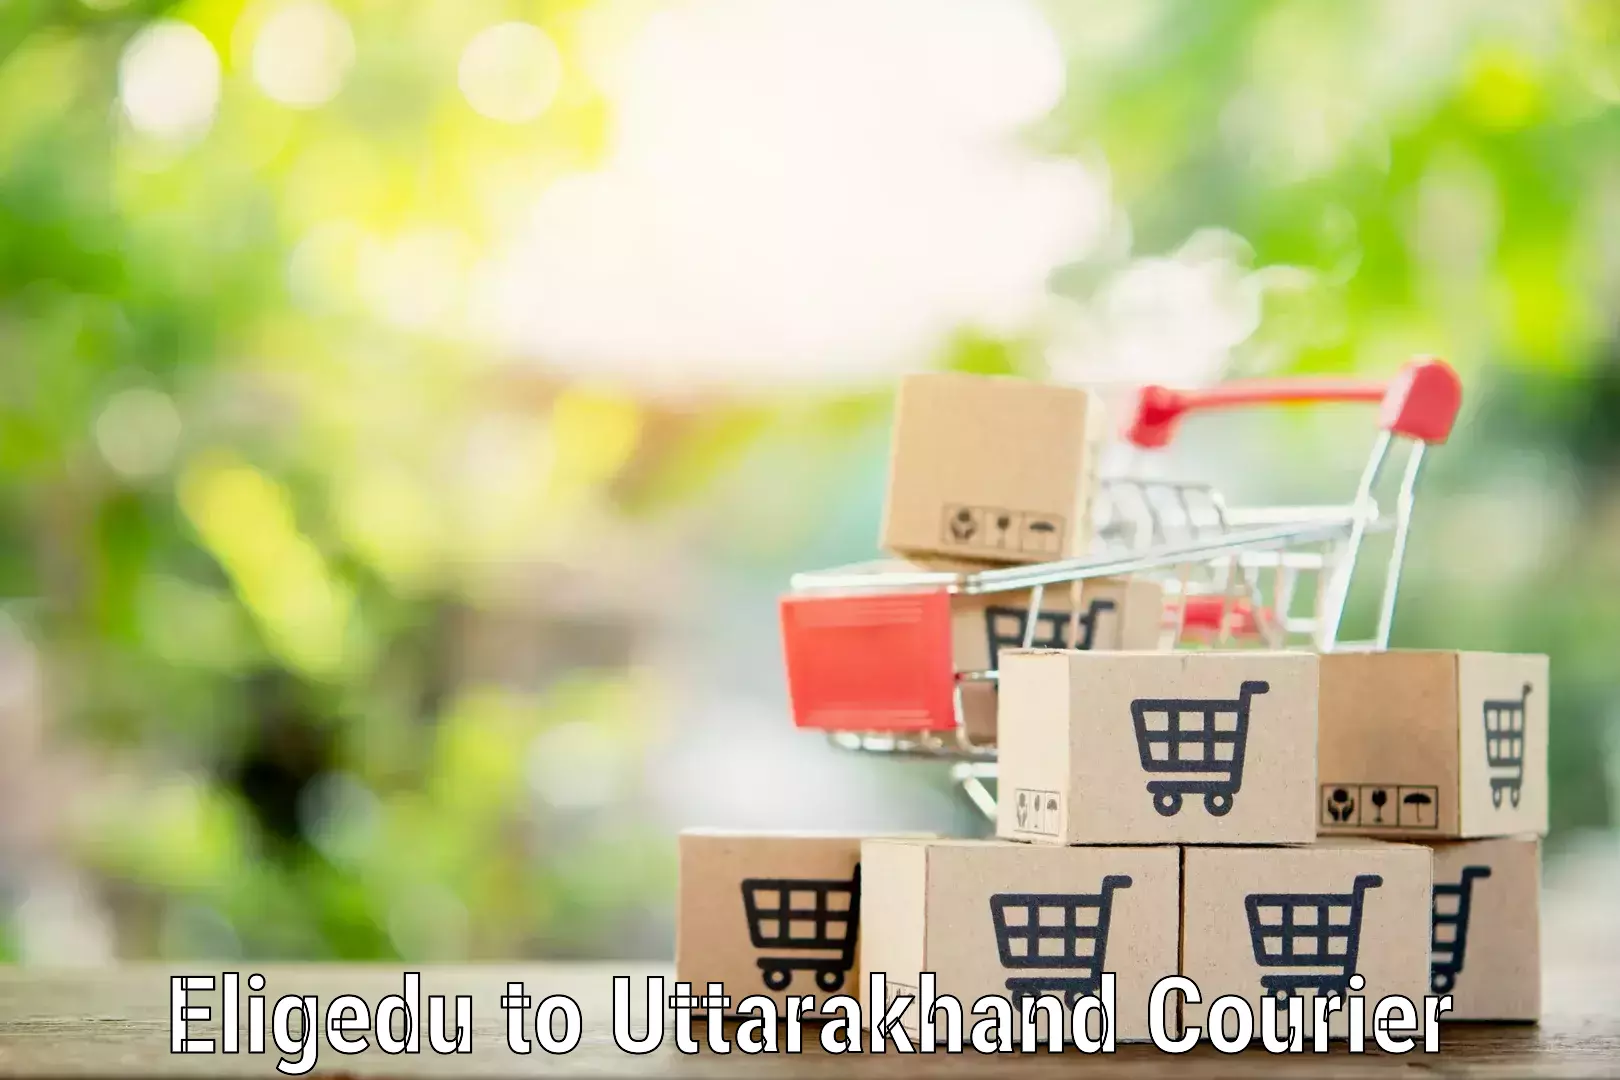 Household moving companies Eligedu to Uttarkashi